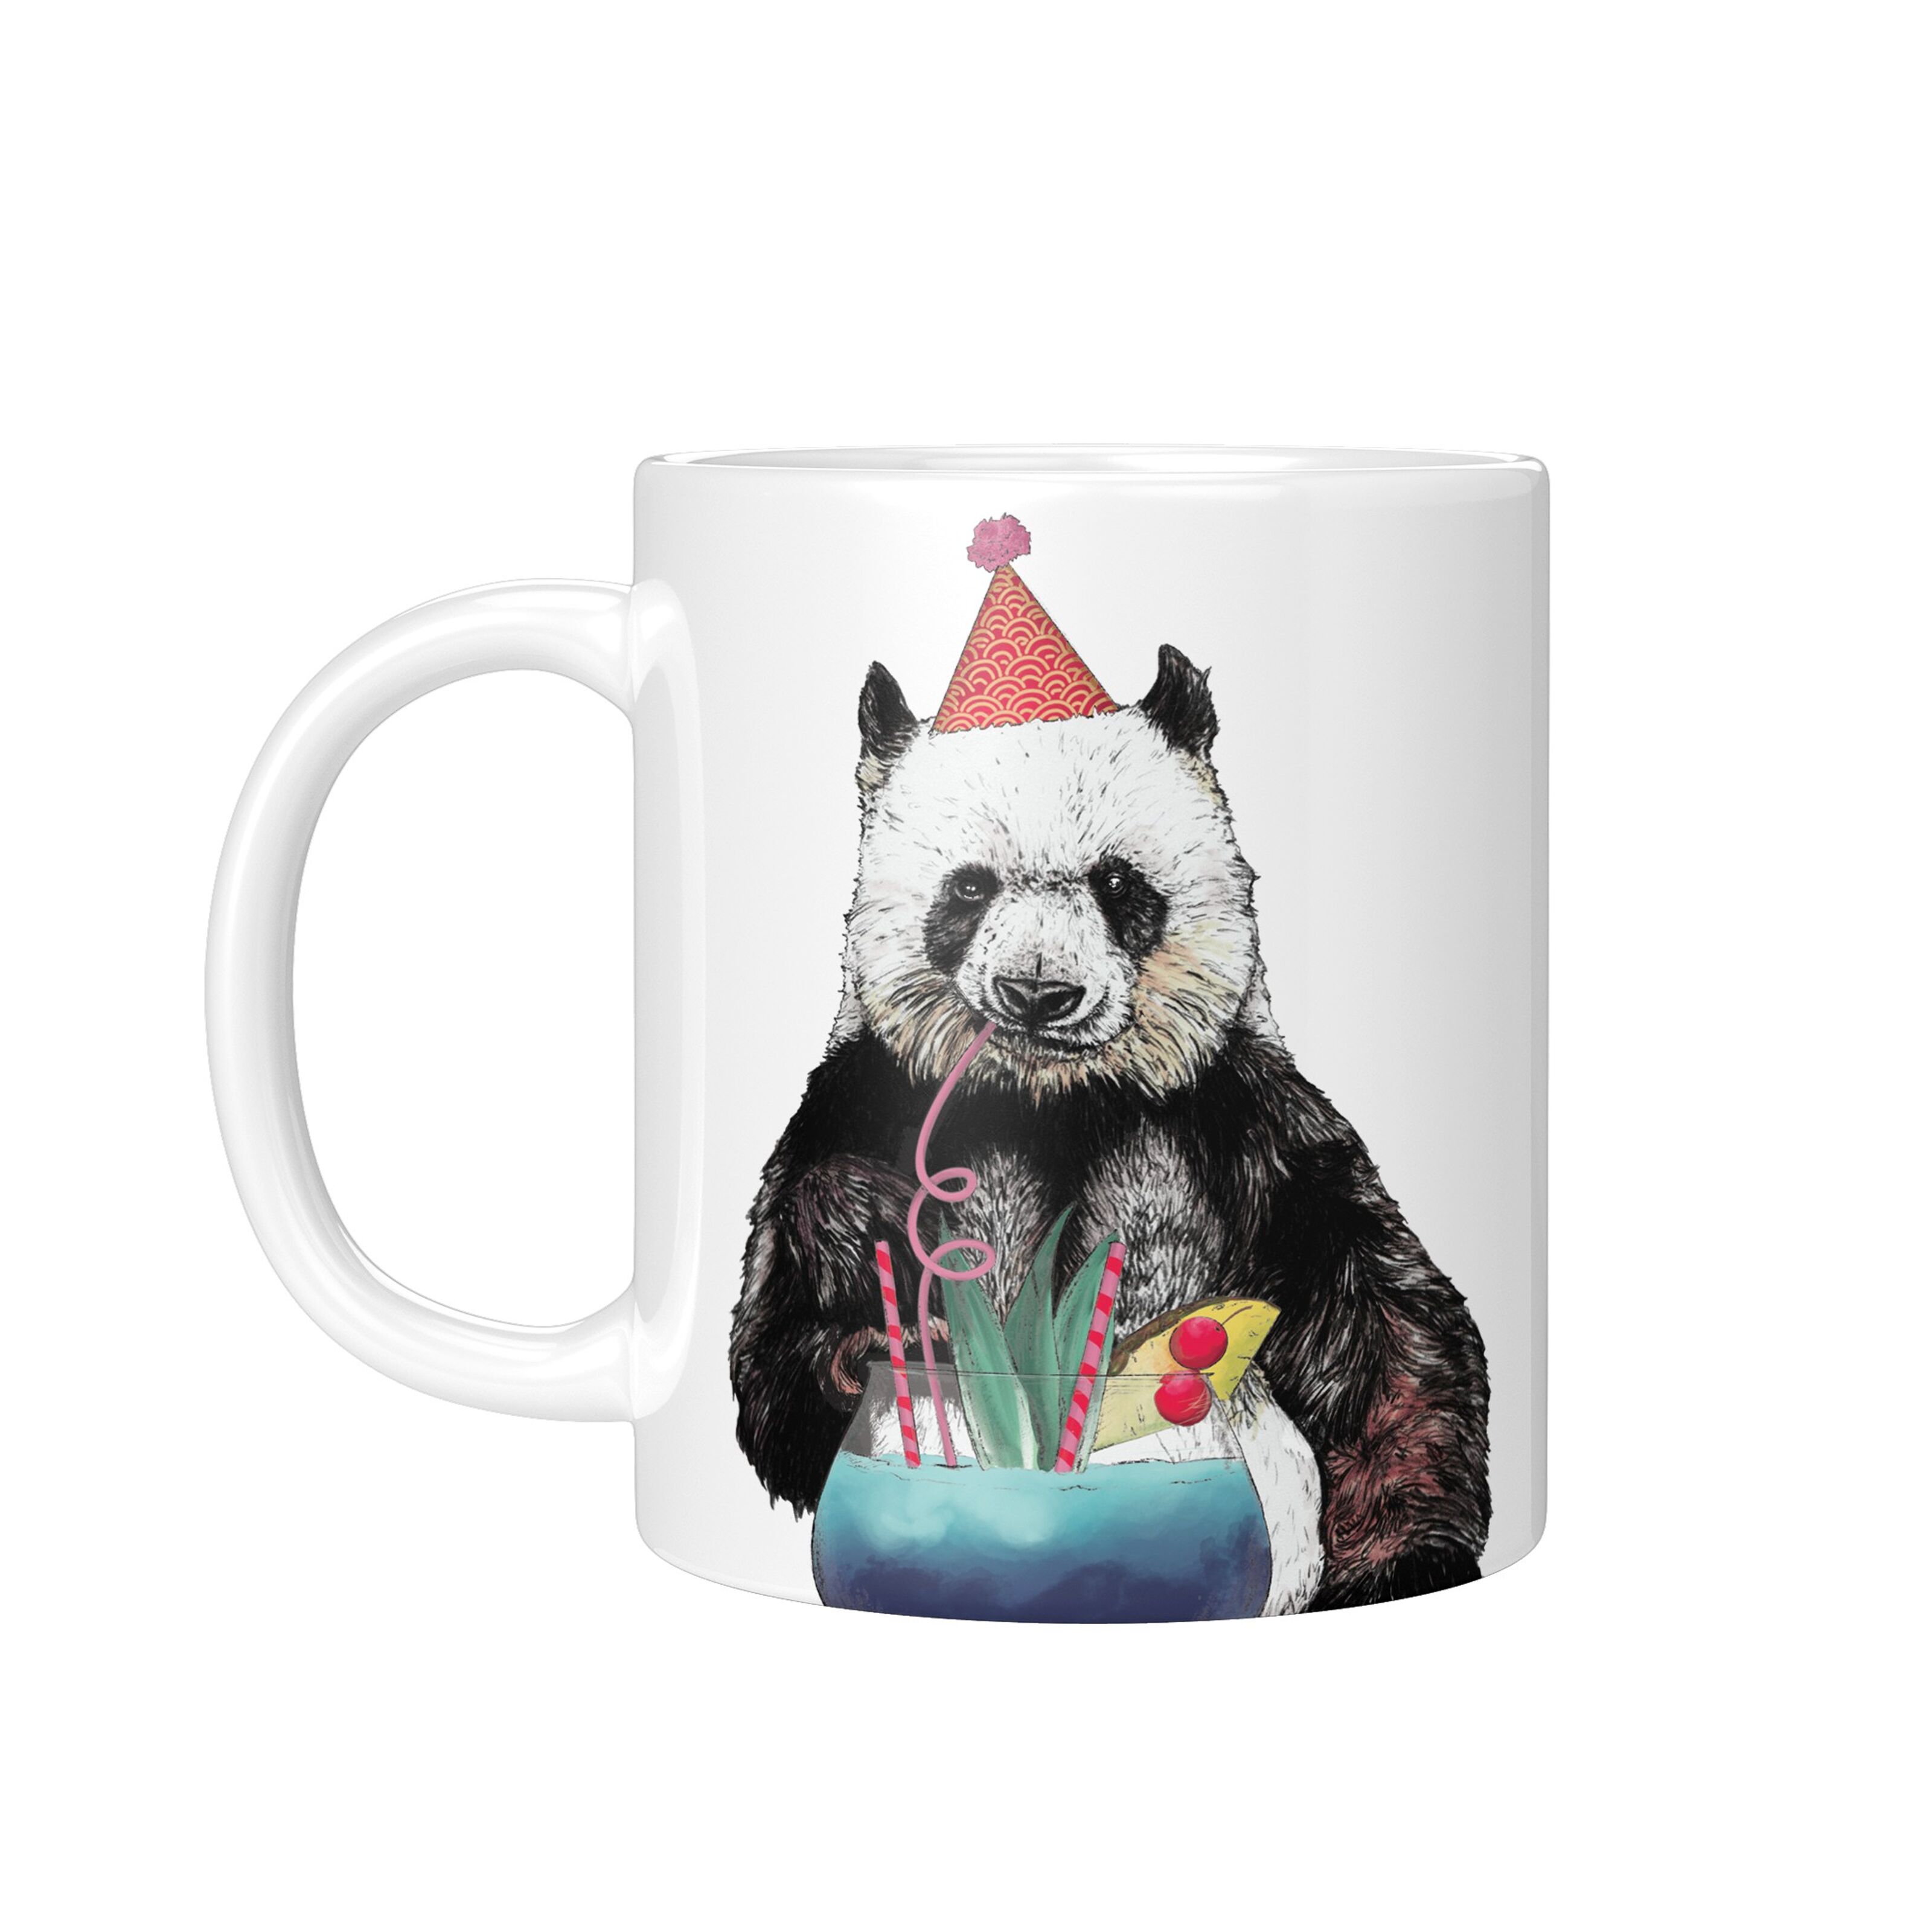 Compra Tazza Panda Party, Tazza da caffè con animali, Regalo panda